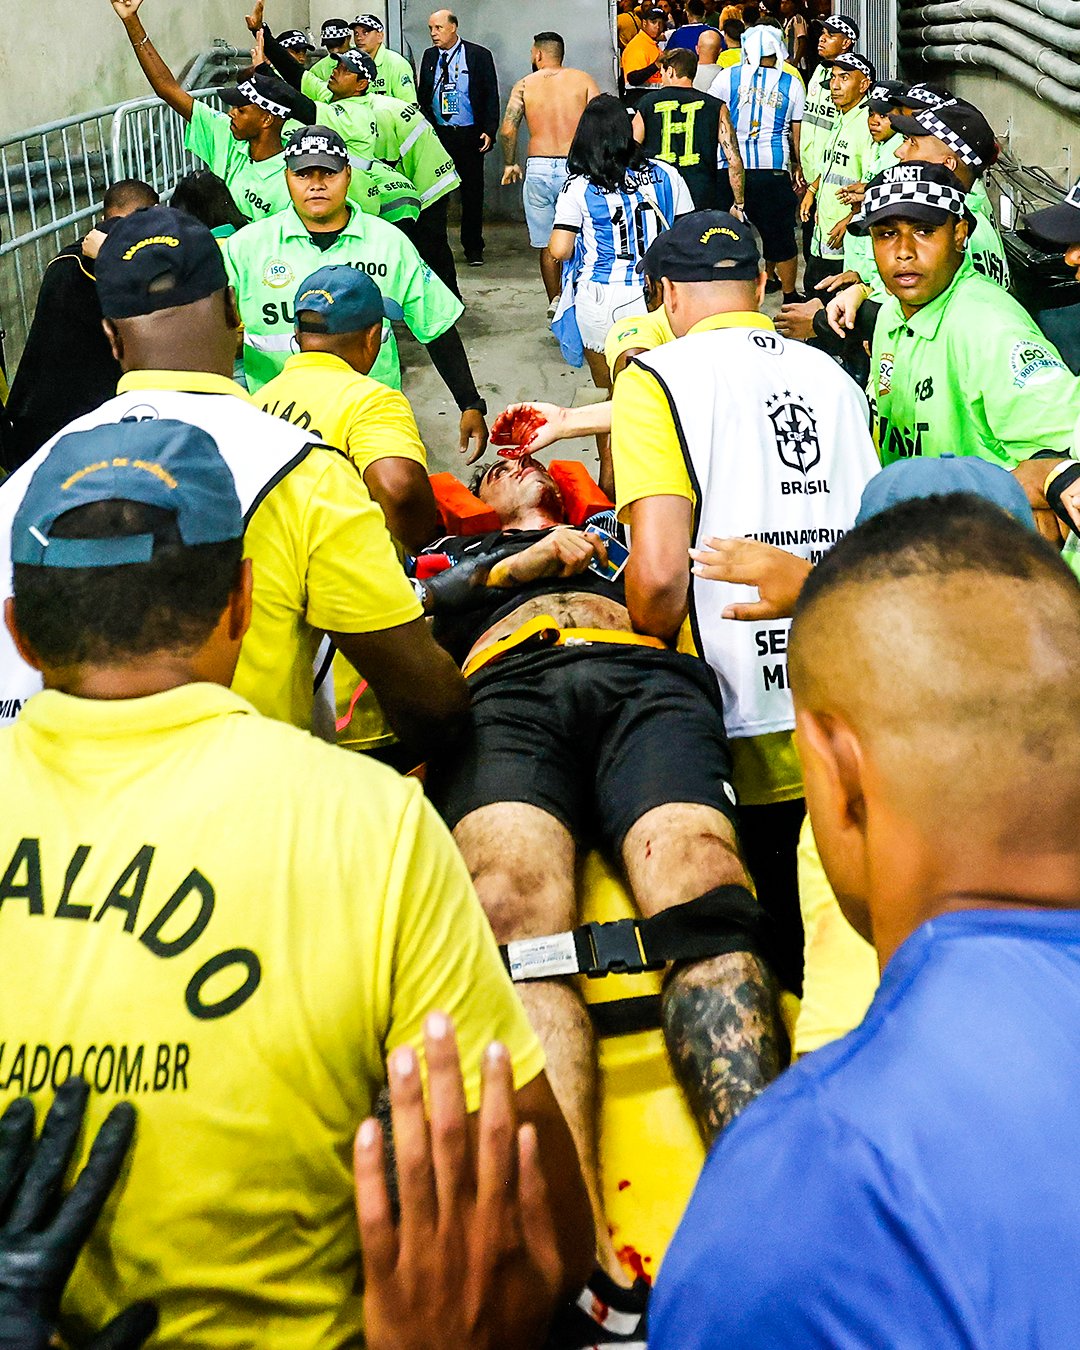 أحد الجماهير بعد الاعتداء عليه في مباراة البرازيل ضد الأرجنتين